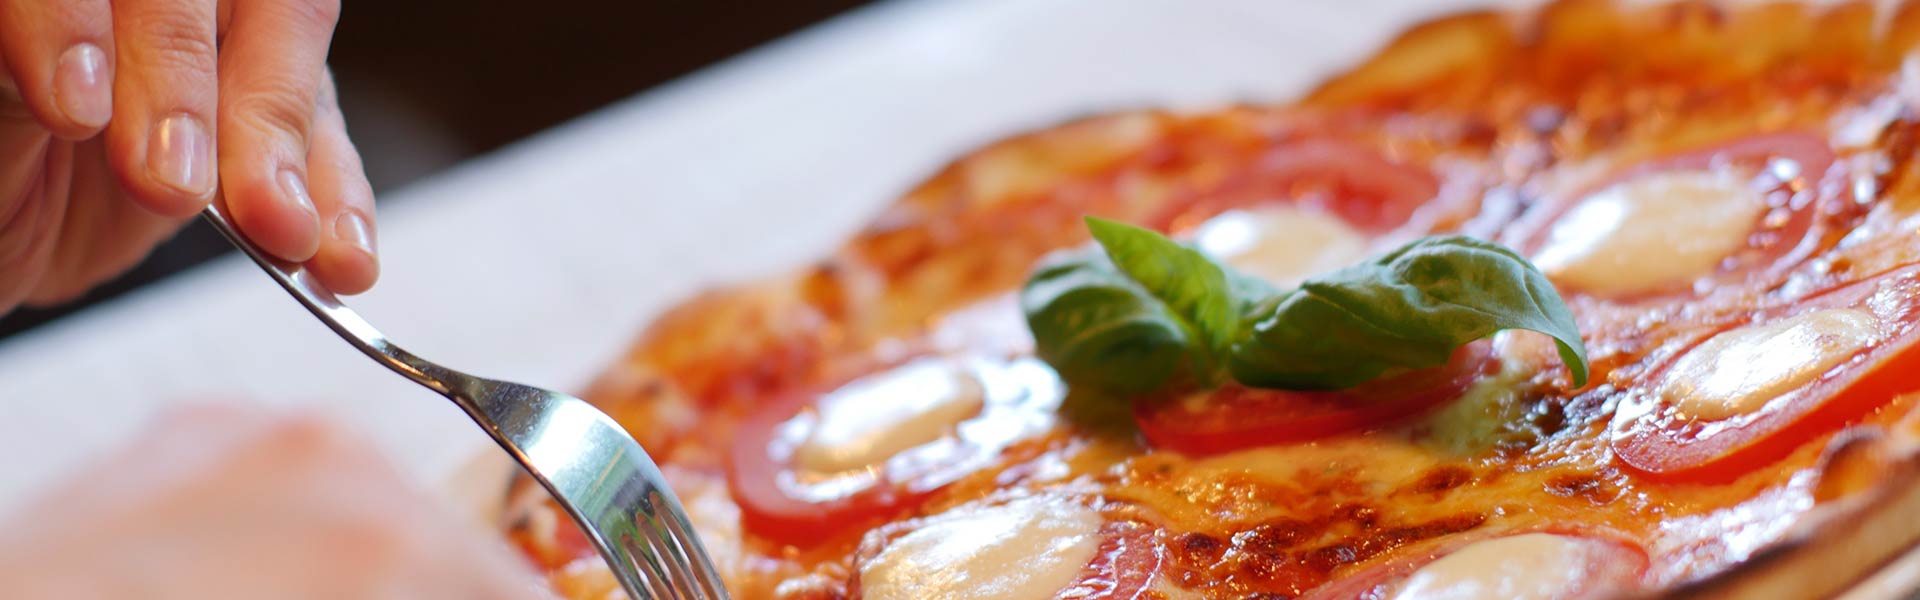 Pizza clasica italiana, restaurante italiano